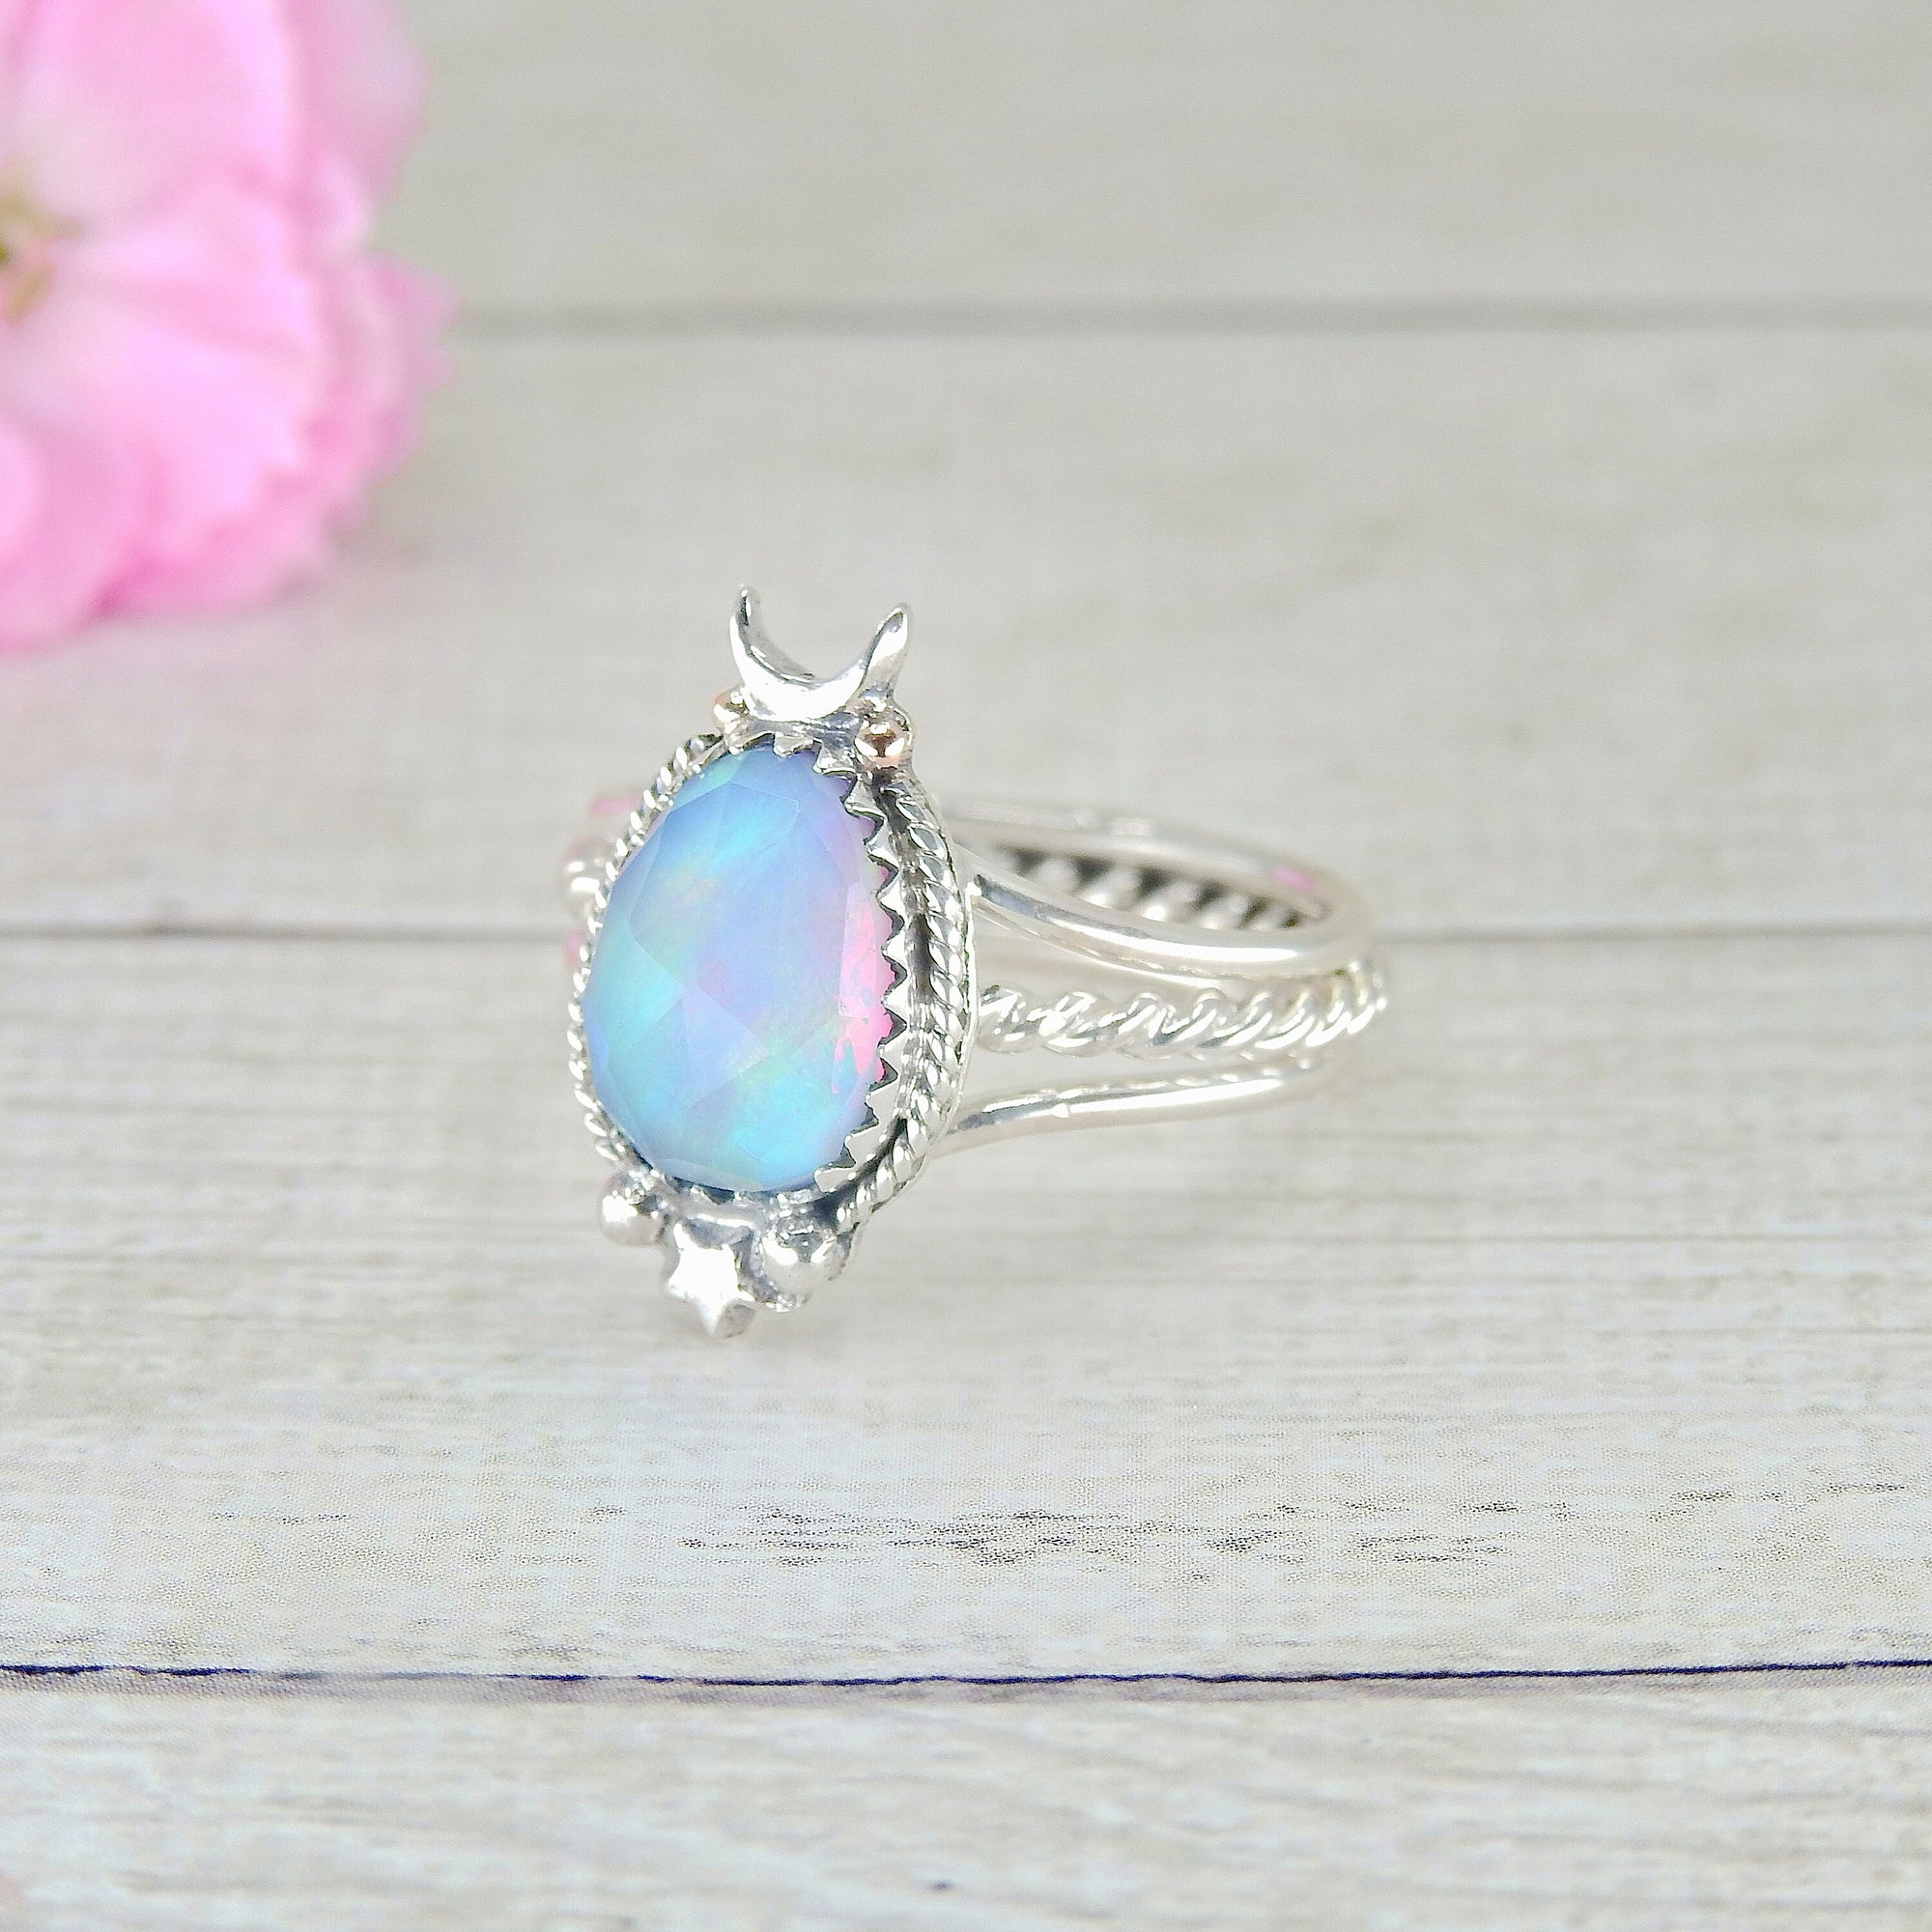 Rose Cut Clear Quartz & Aurora Opal Ring - Size 8.25 